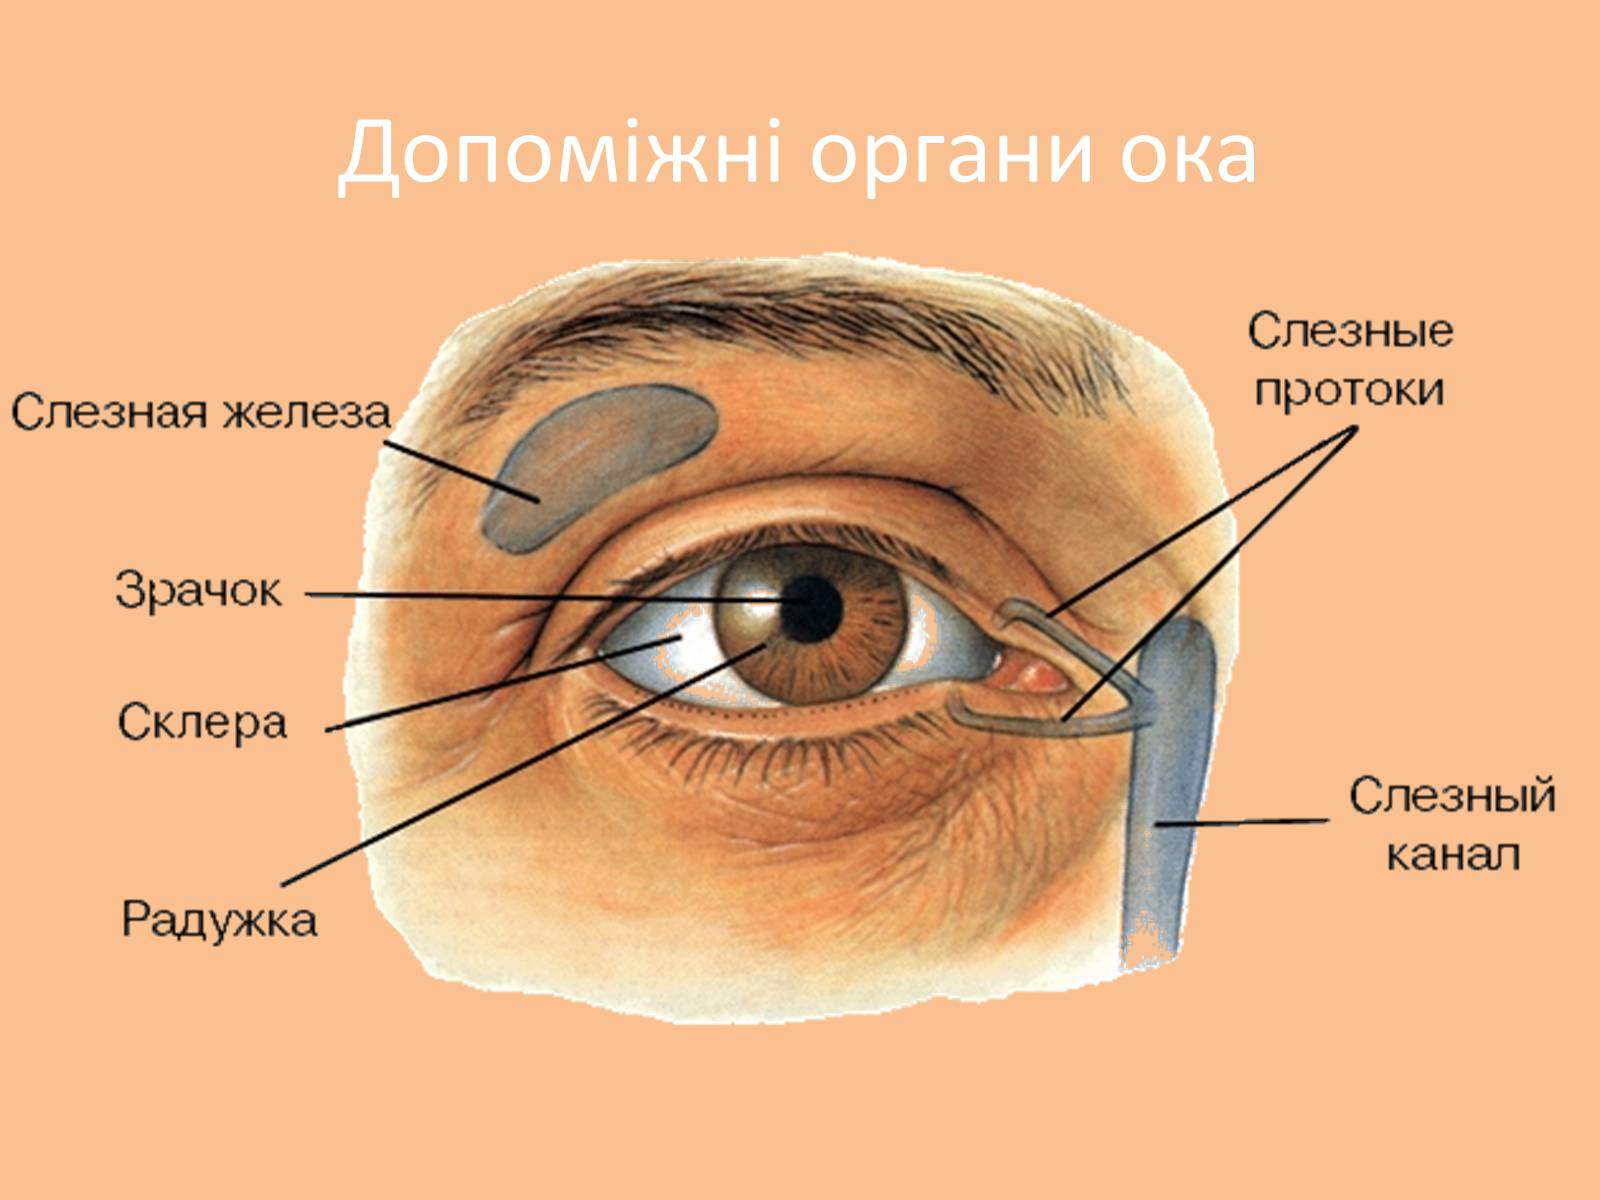 Где находится подберешь. Дакриоаденит слезной железы. Анатомия глаза слезного канала. Слезная железа и слезный канал функции. Защитно вспомогательный аппарат глаза.